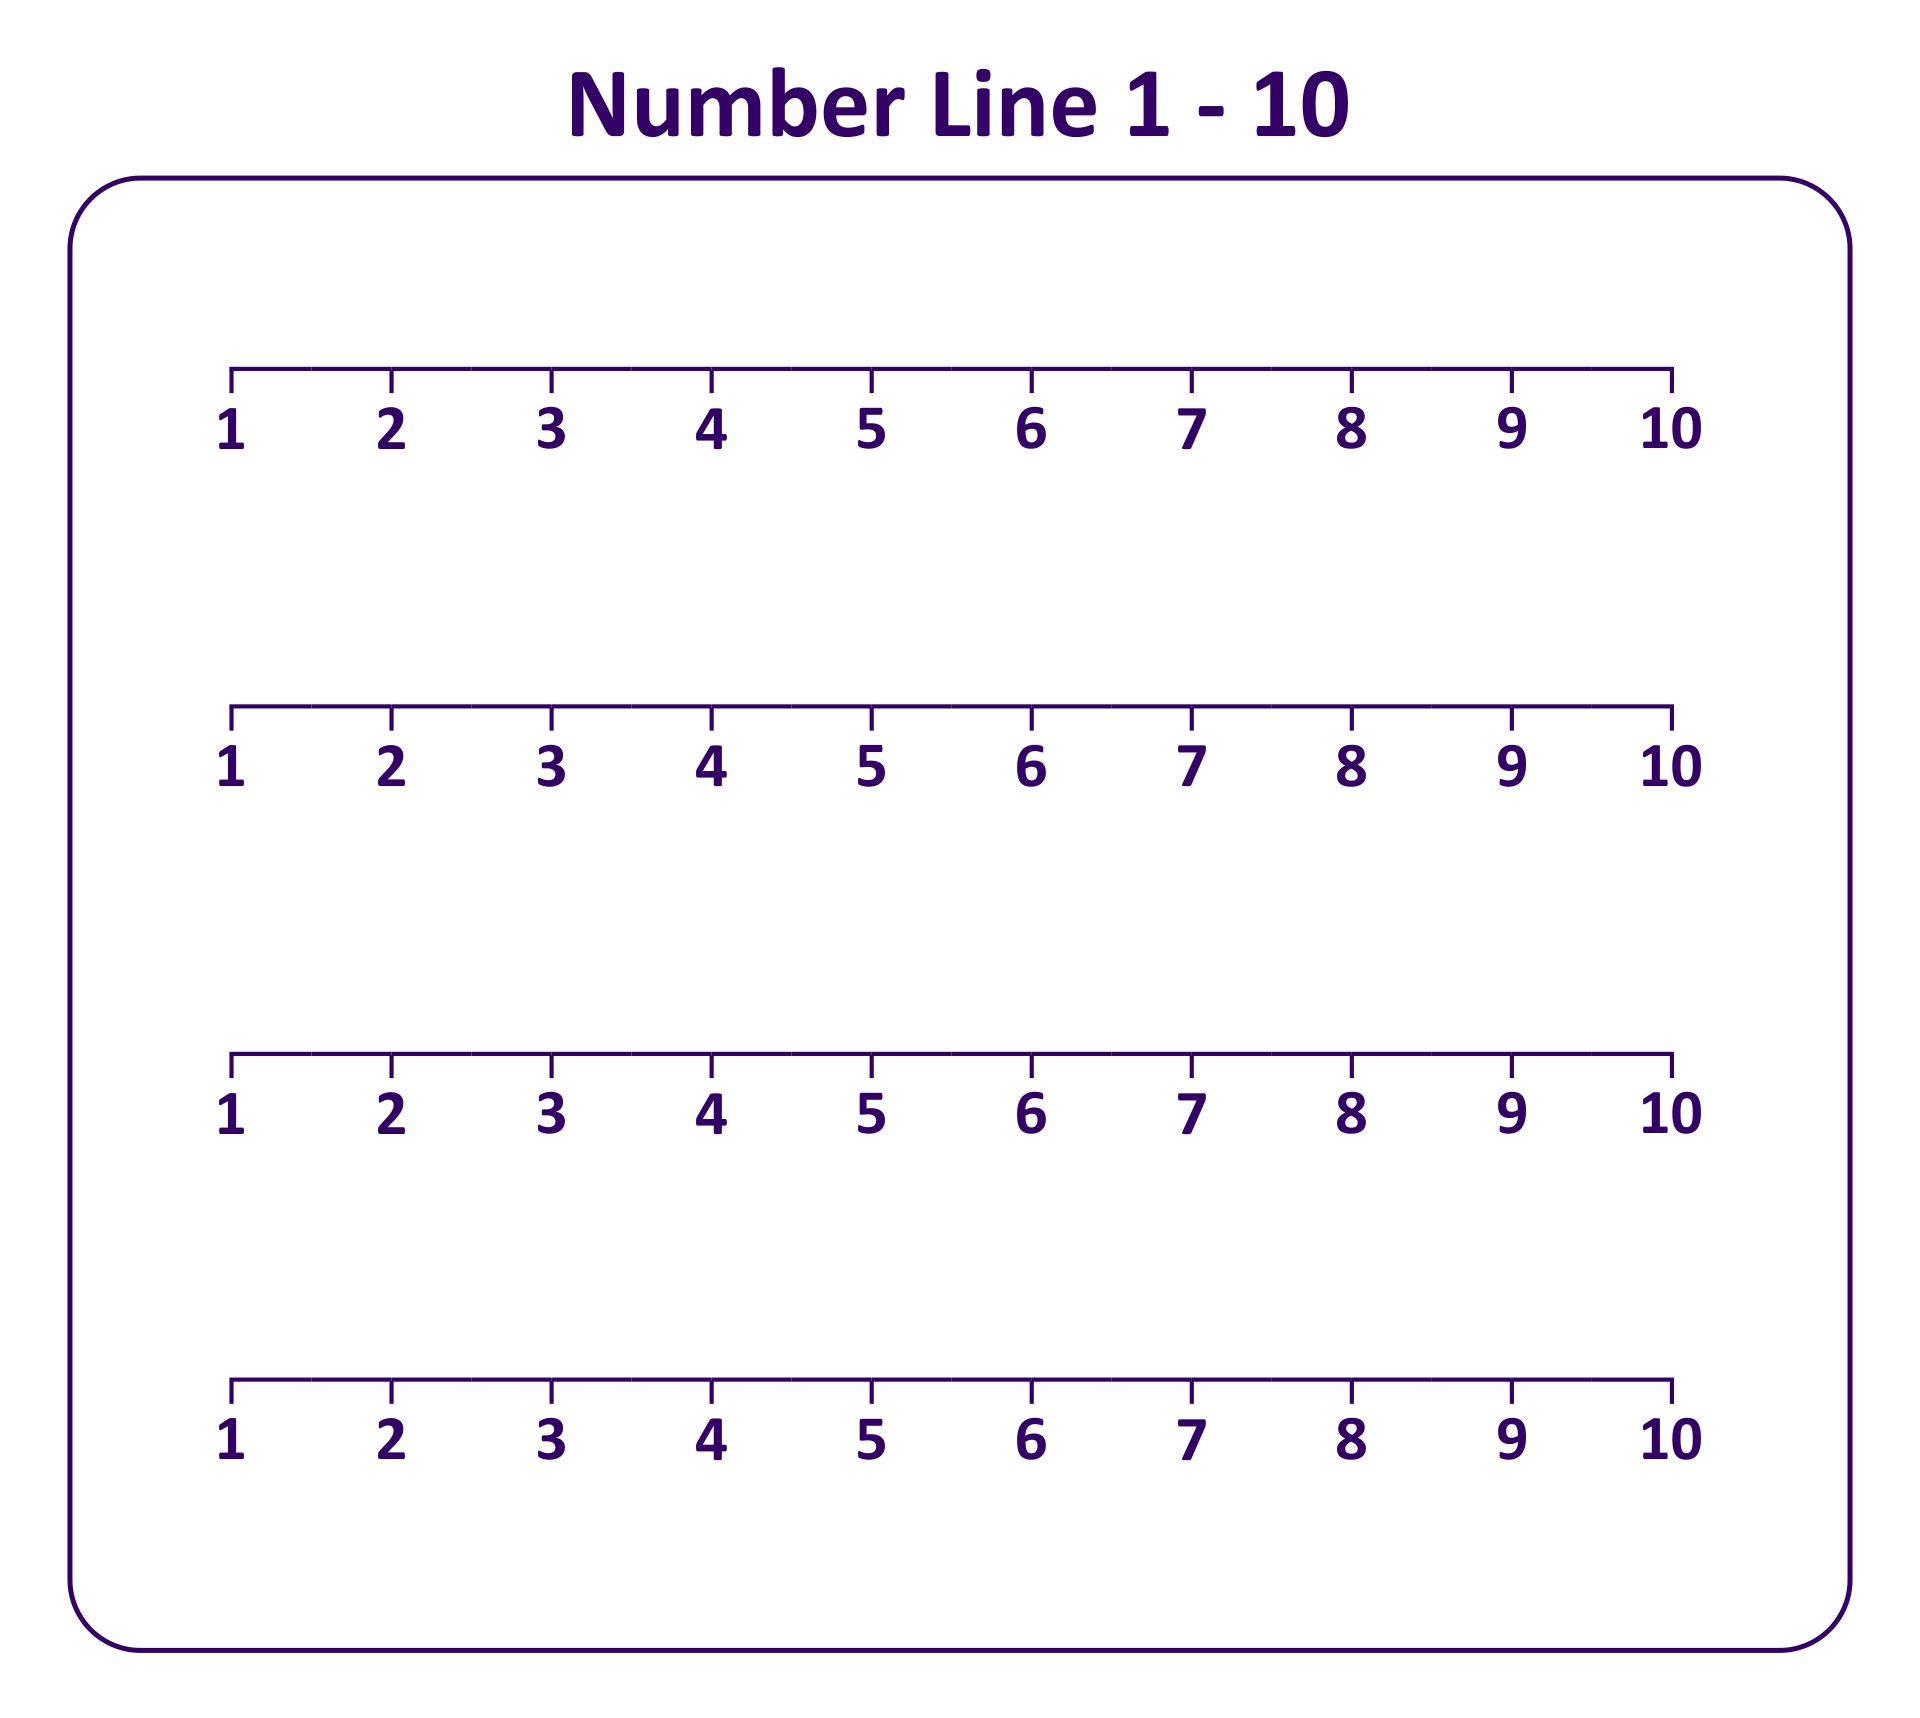 Number Line 1-10